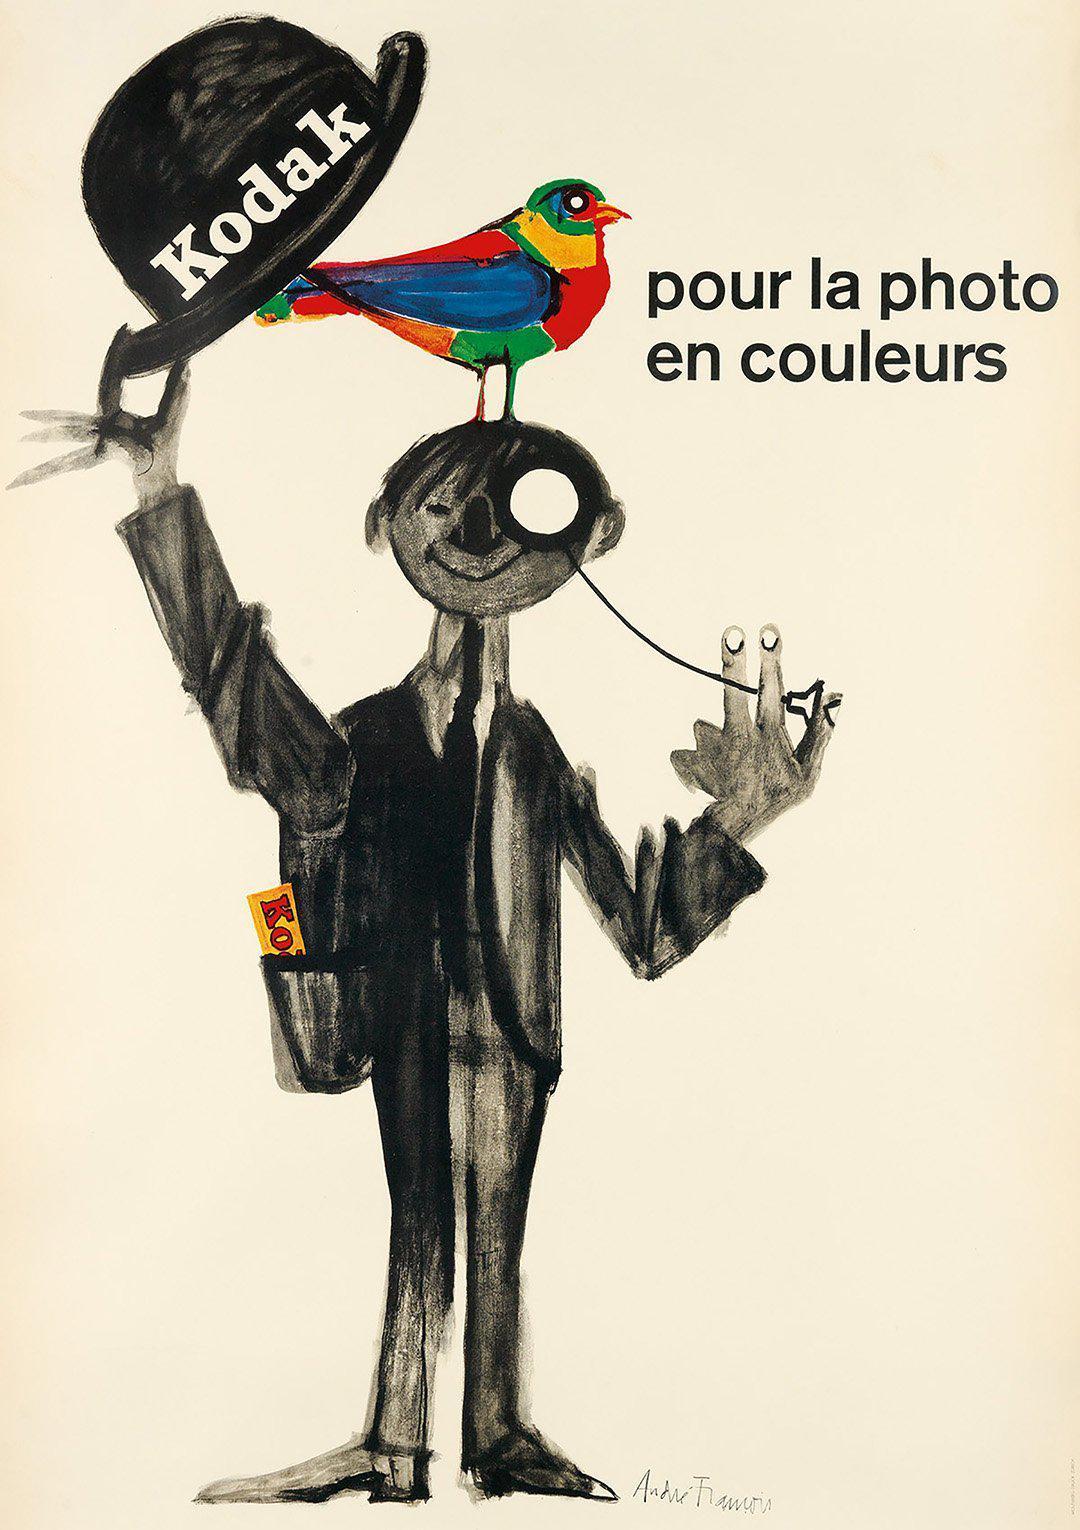 Original Vintage Kodak Poster Pour la Photo en Couleurs c1950 by Andre' Francois